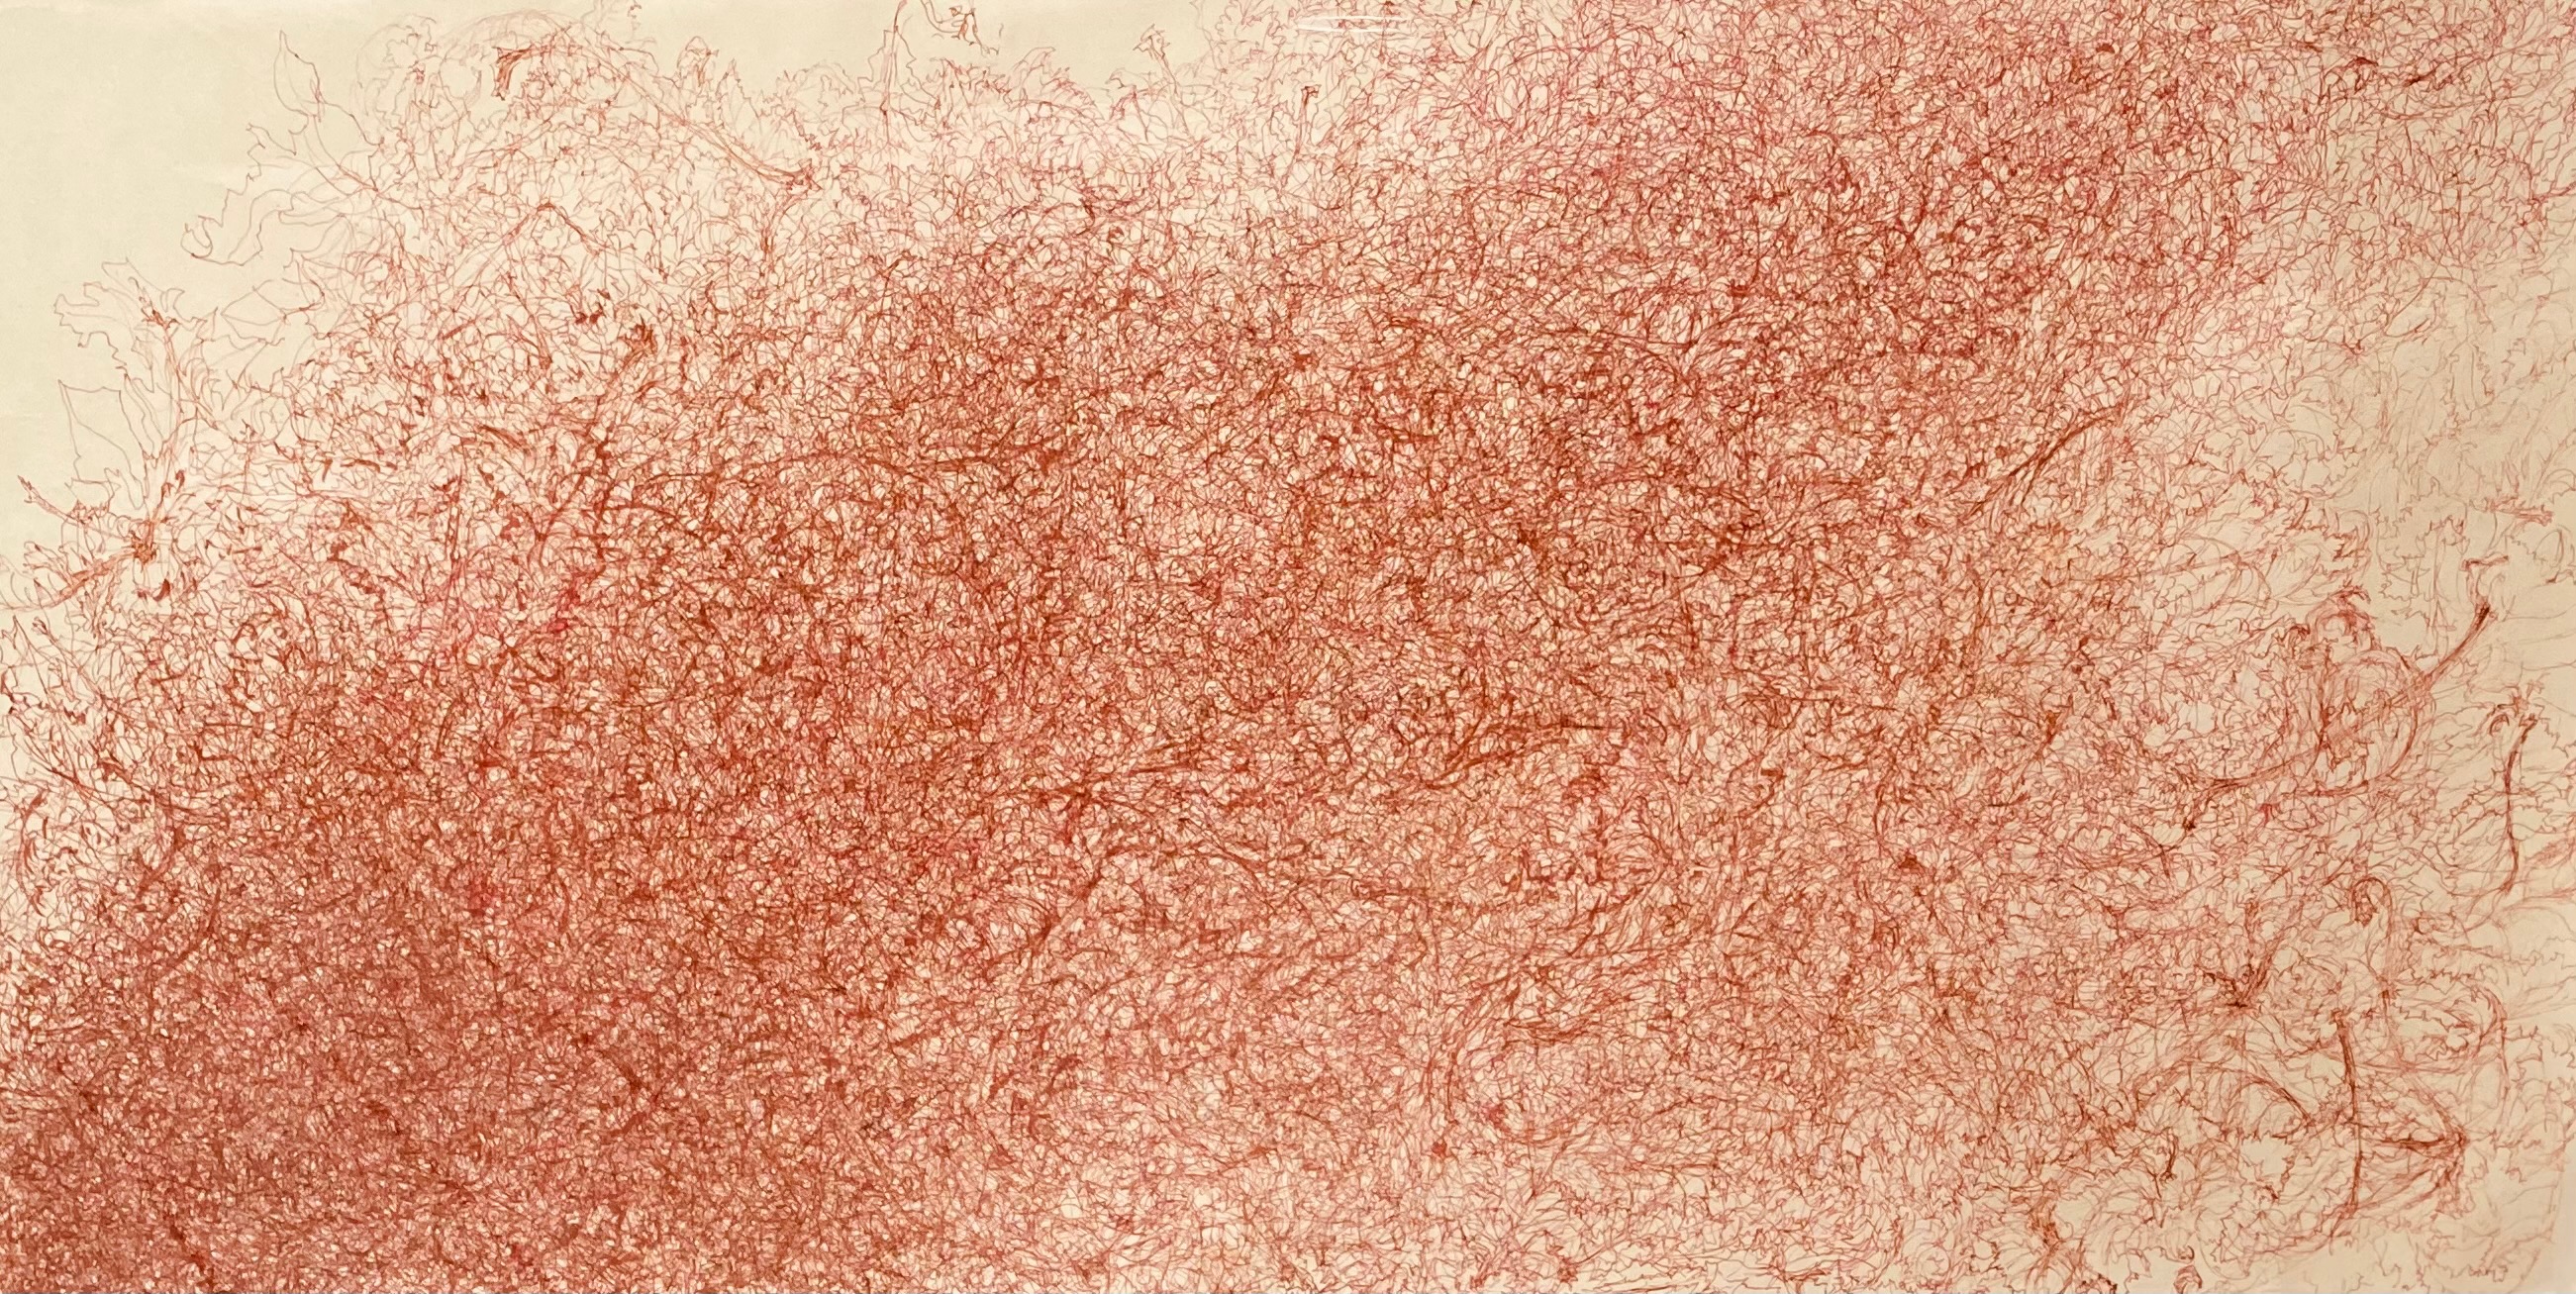 Amoncellement dessin à l'encre sanguine sur papier Japon 61x102 cm